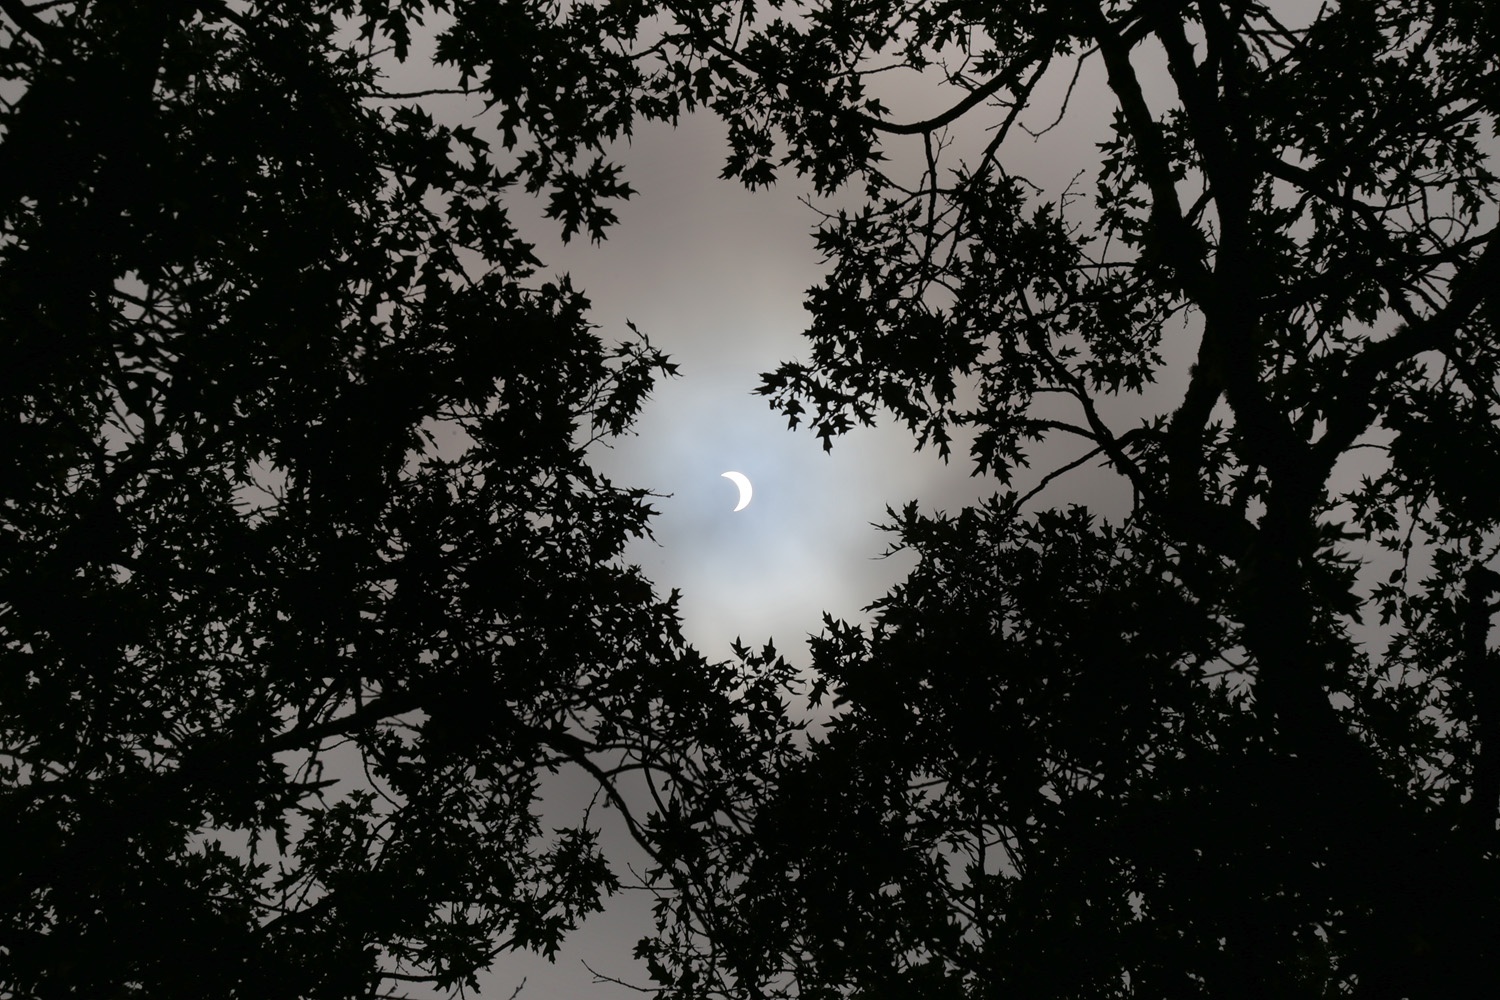 bill-hocker-solar-eclipse-napa-california-10:45am-pdt-2017